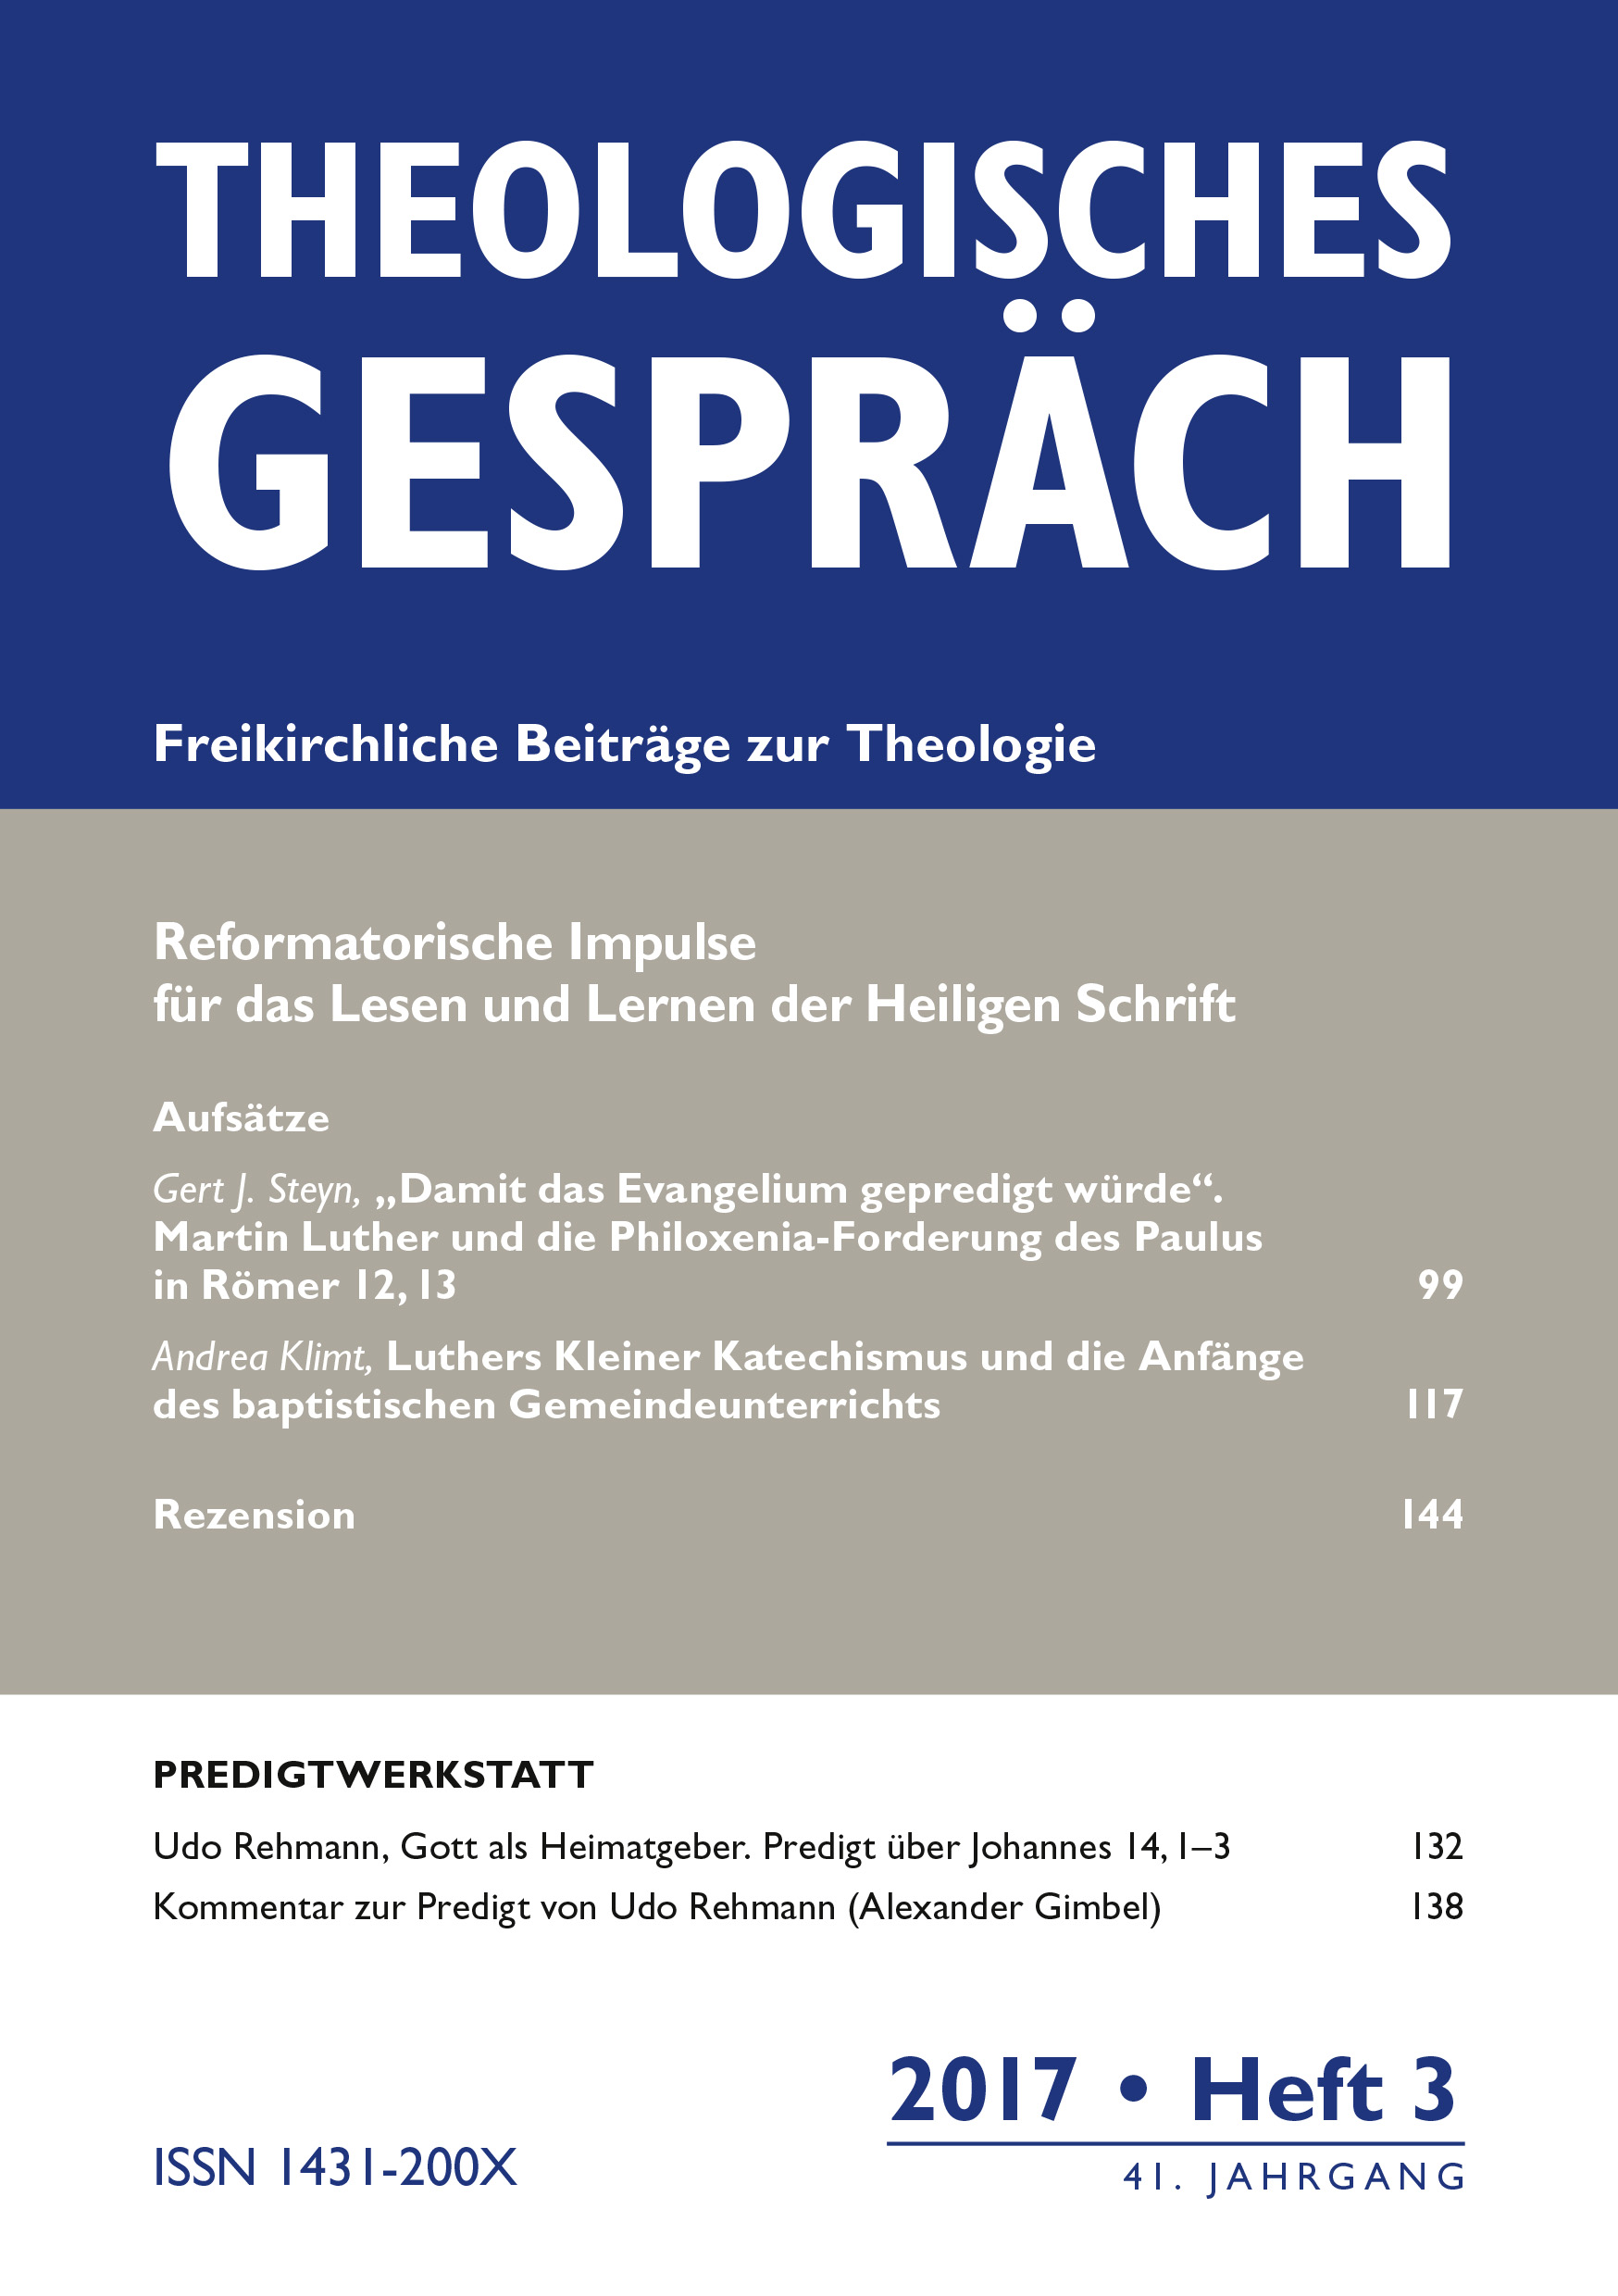 Theologisches Gespräch 03/2017